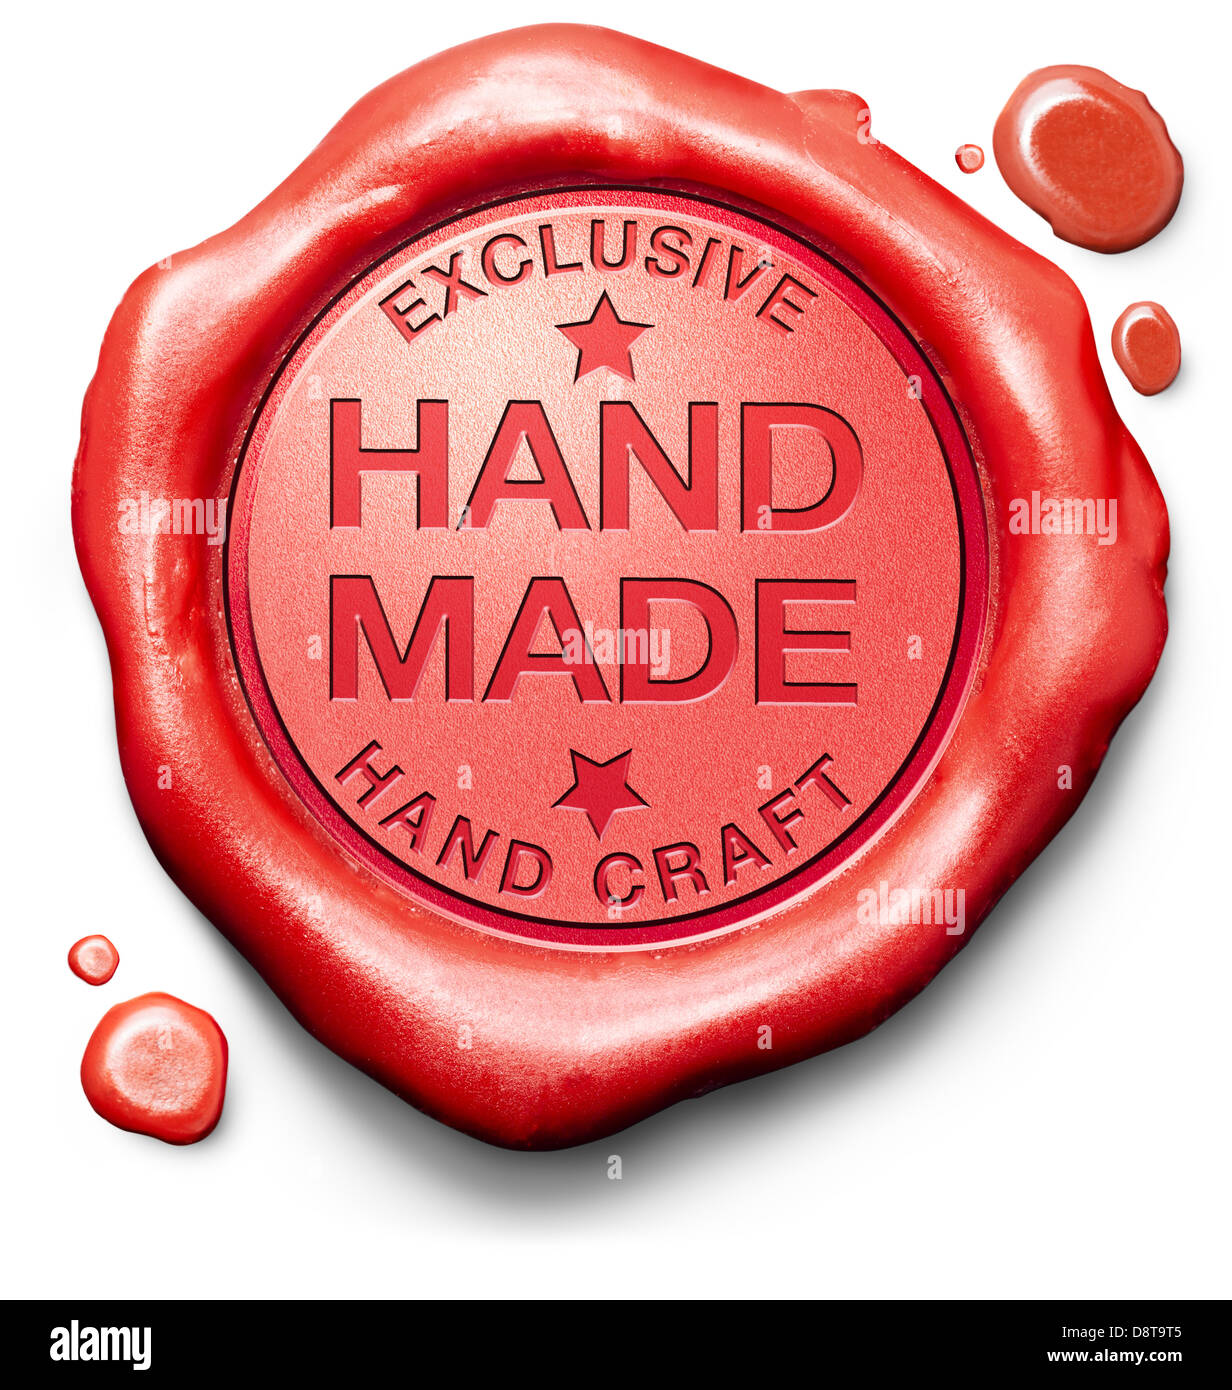 Exclusive fait main handmade hand craft conçu sur mesure un authentique d'une sorte d'art de l'étiquette ou sur l'icône rouge stamp Banque D'Images